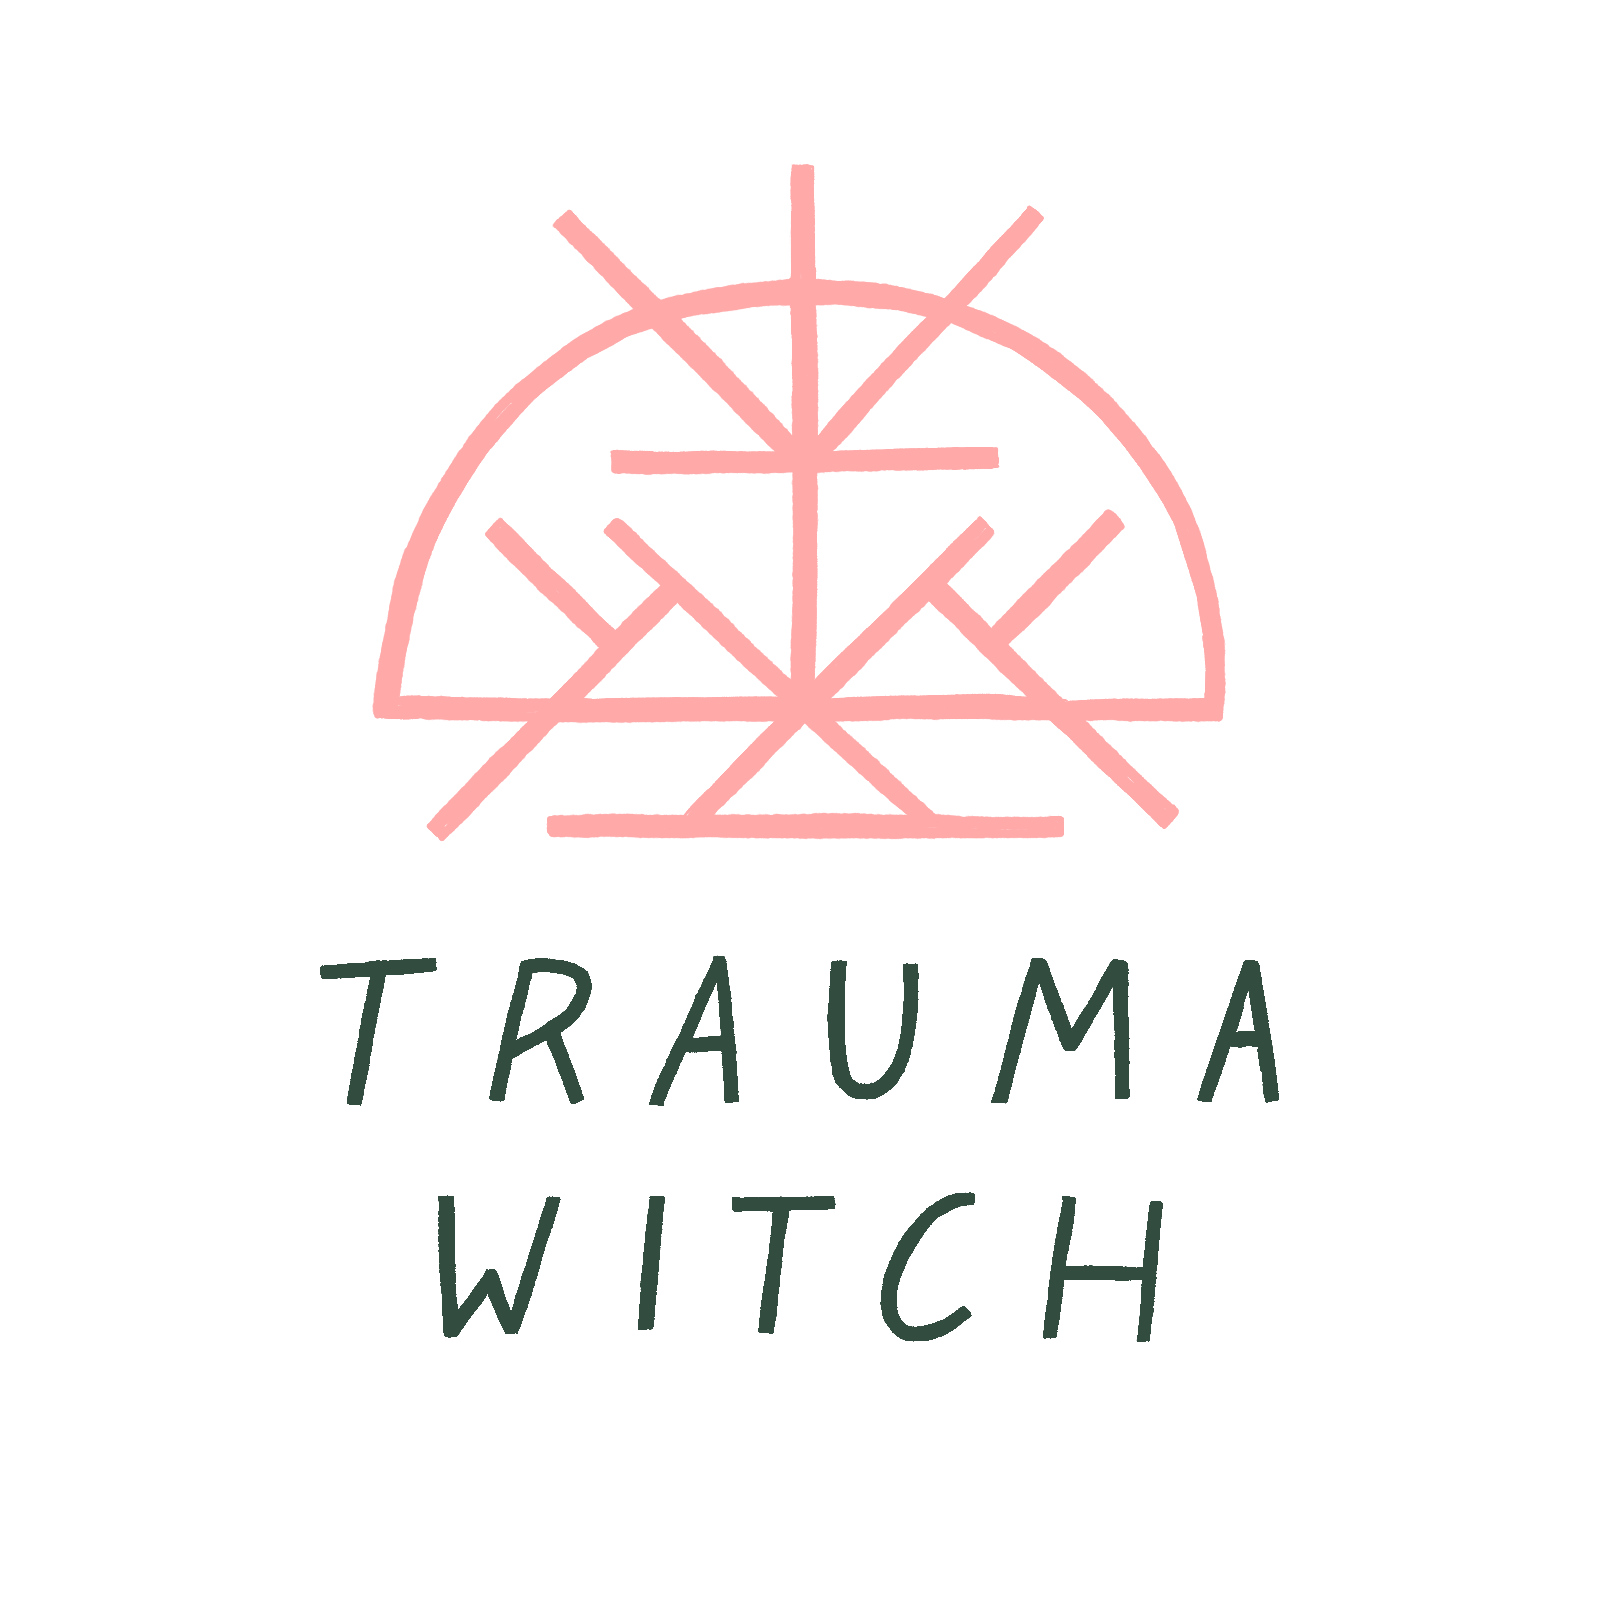 THE TRAUMA WITCH